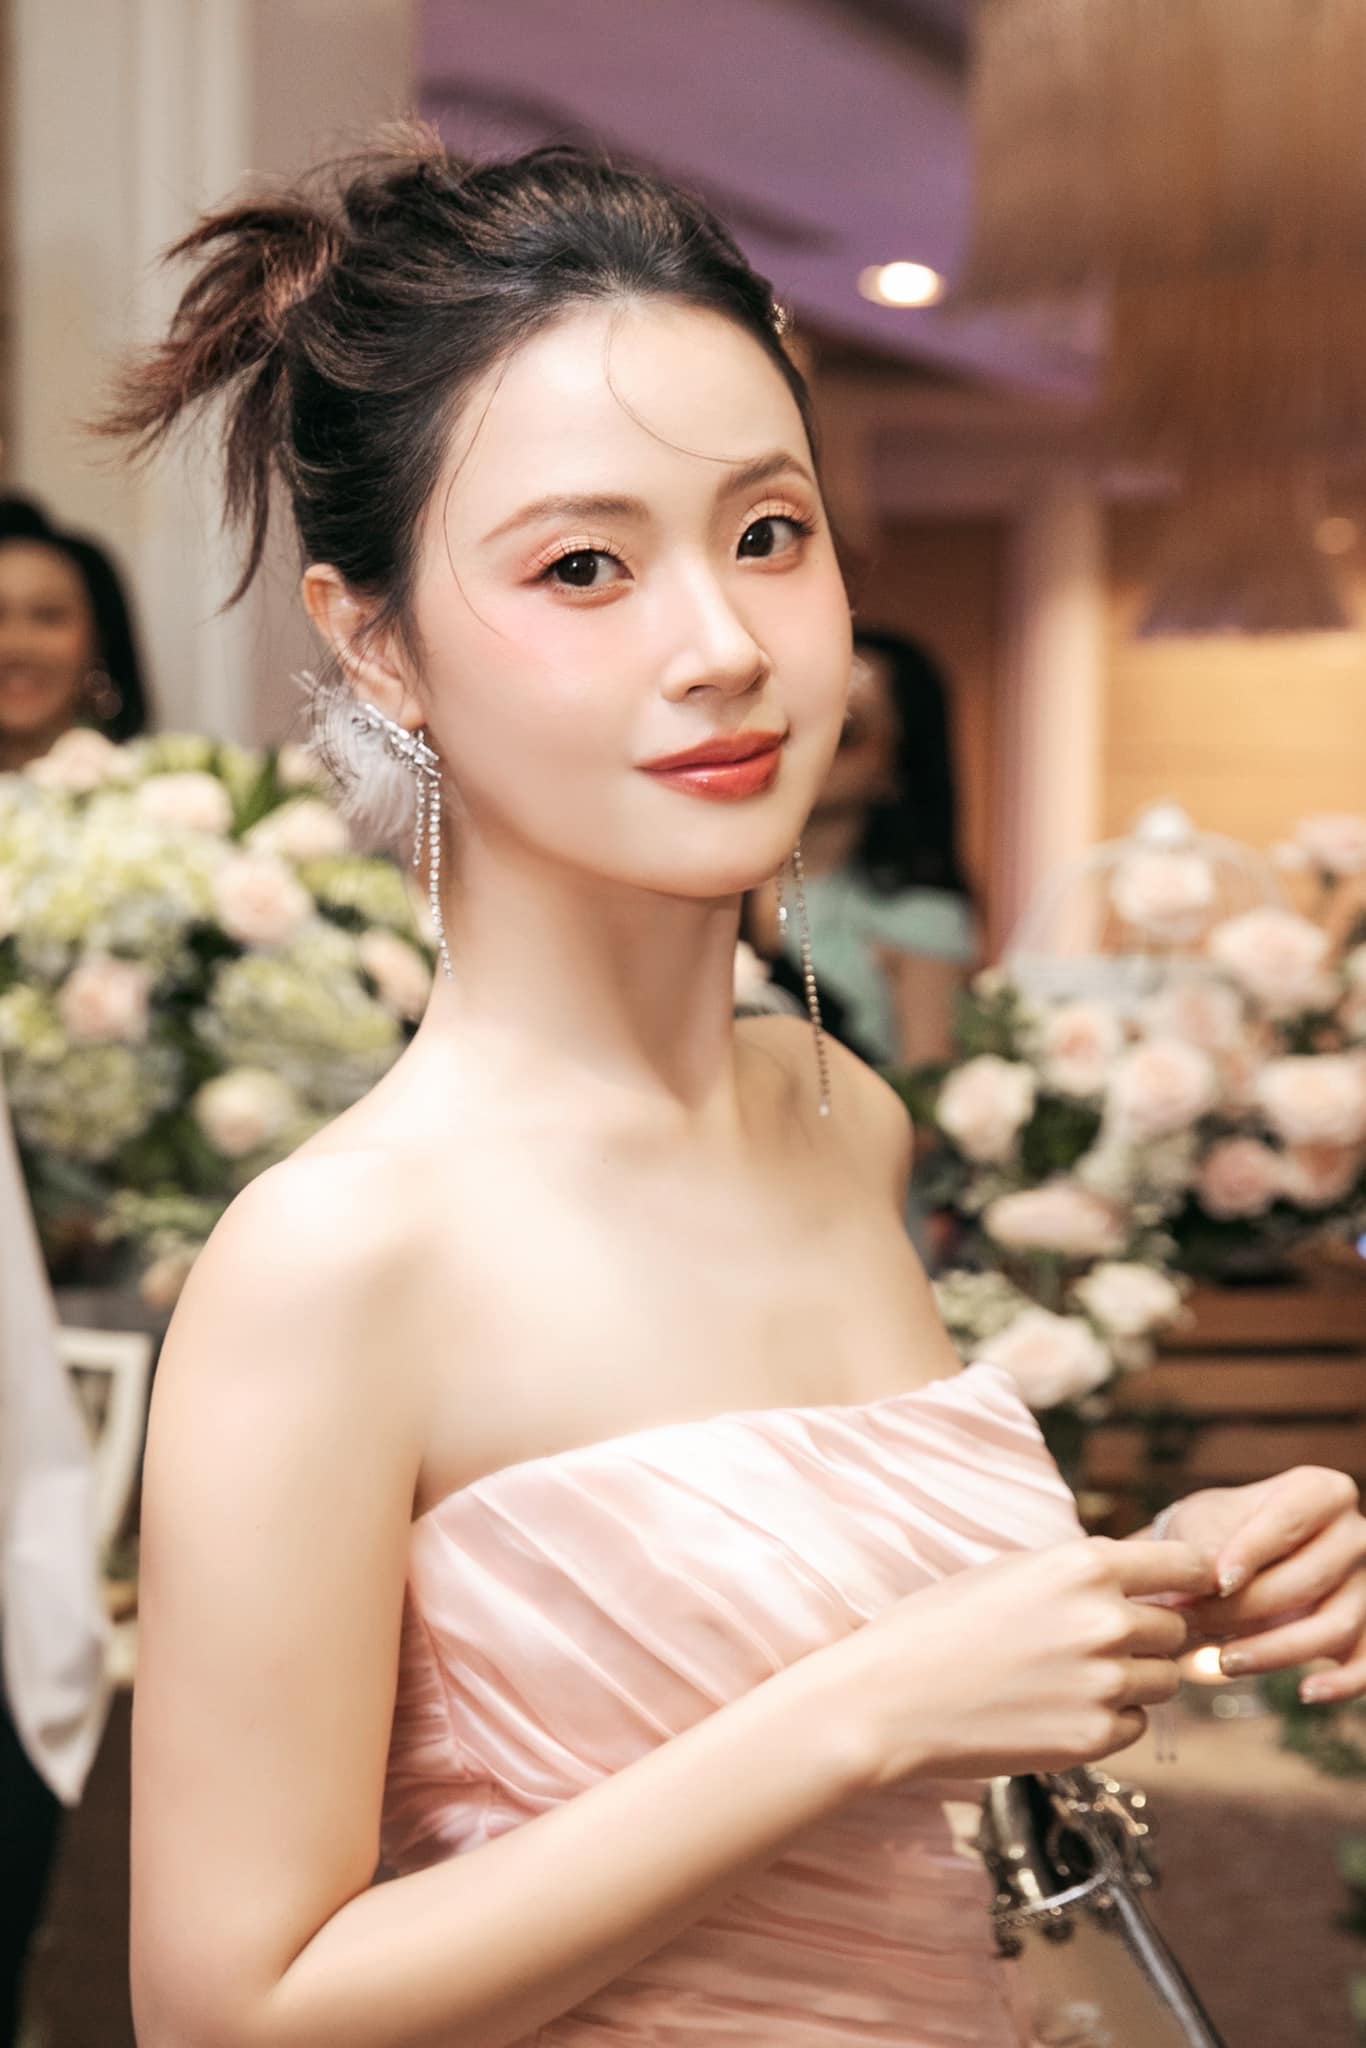 Midu tổ chức lễ cưới với chồng doanh nhân tại Đà Lạt, thời gian và quy định khách mời được hé lộ